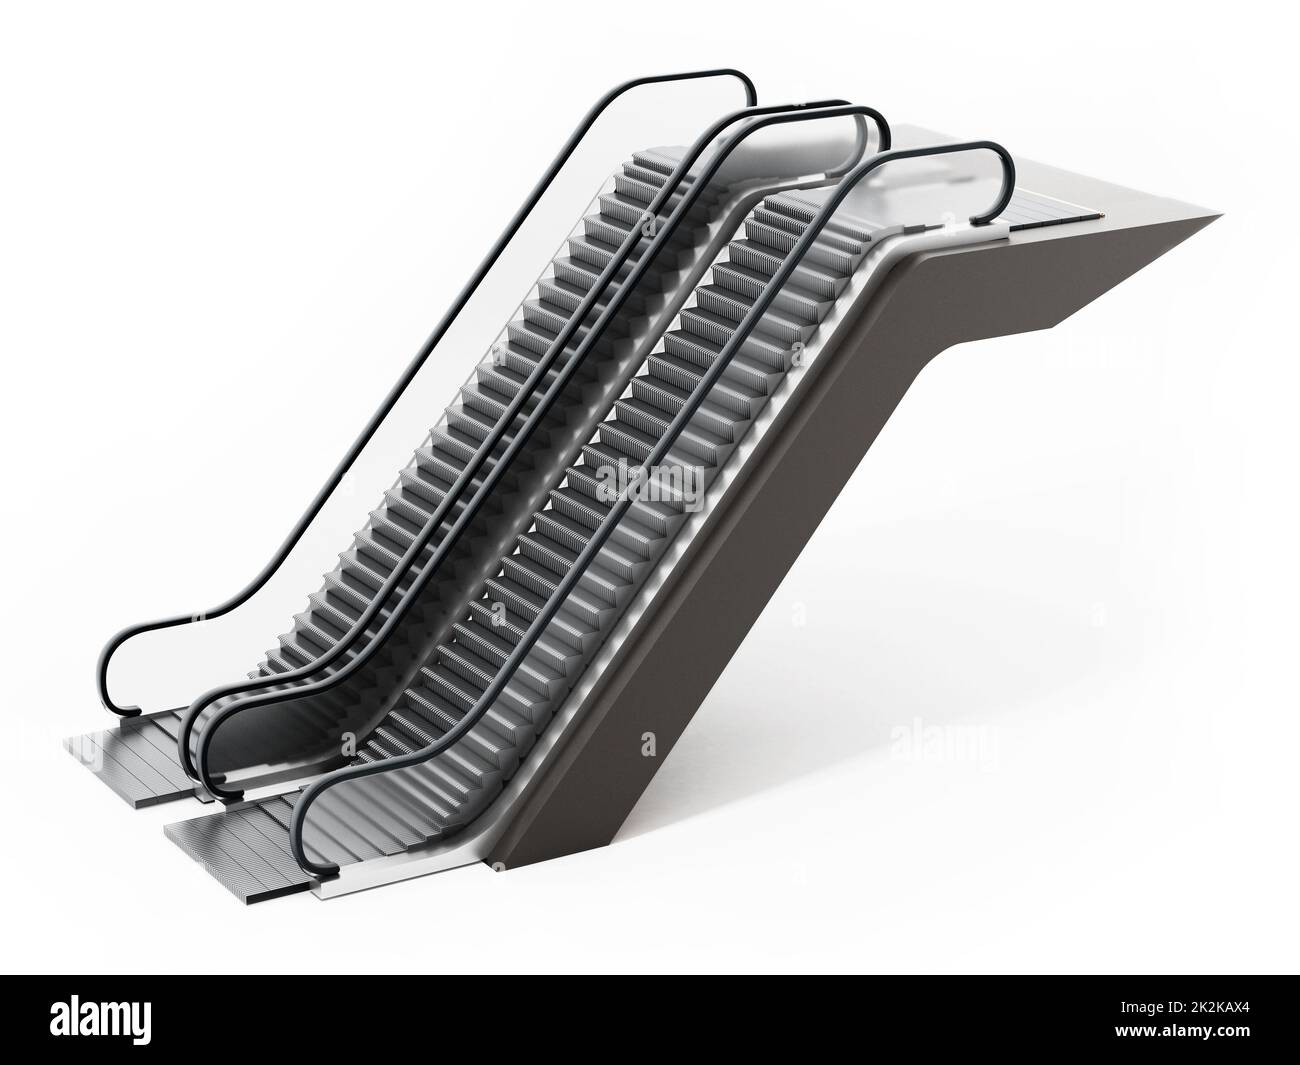 Escalator isolated on white background. 3D illustration Stock Photo